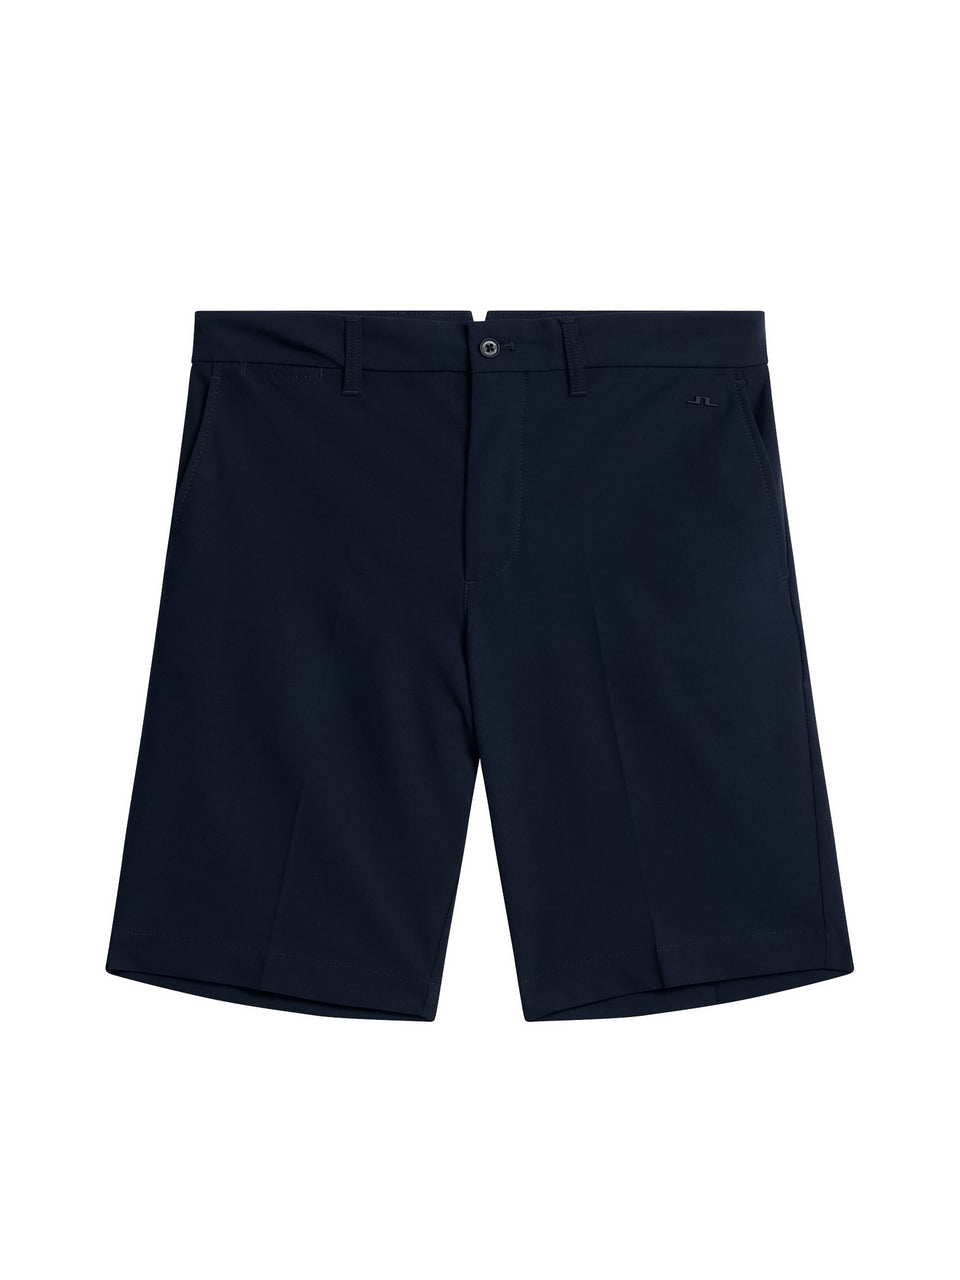 Eloy Shorts / JL Navy